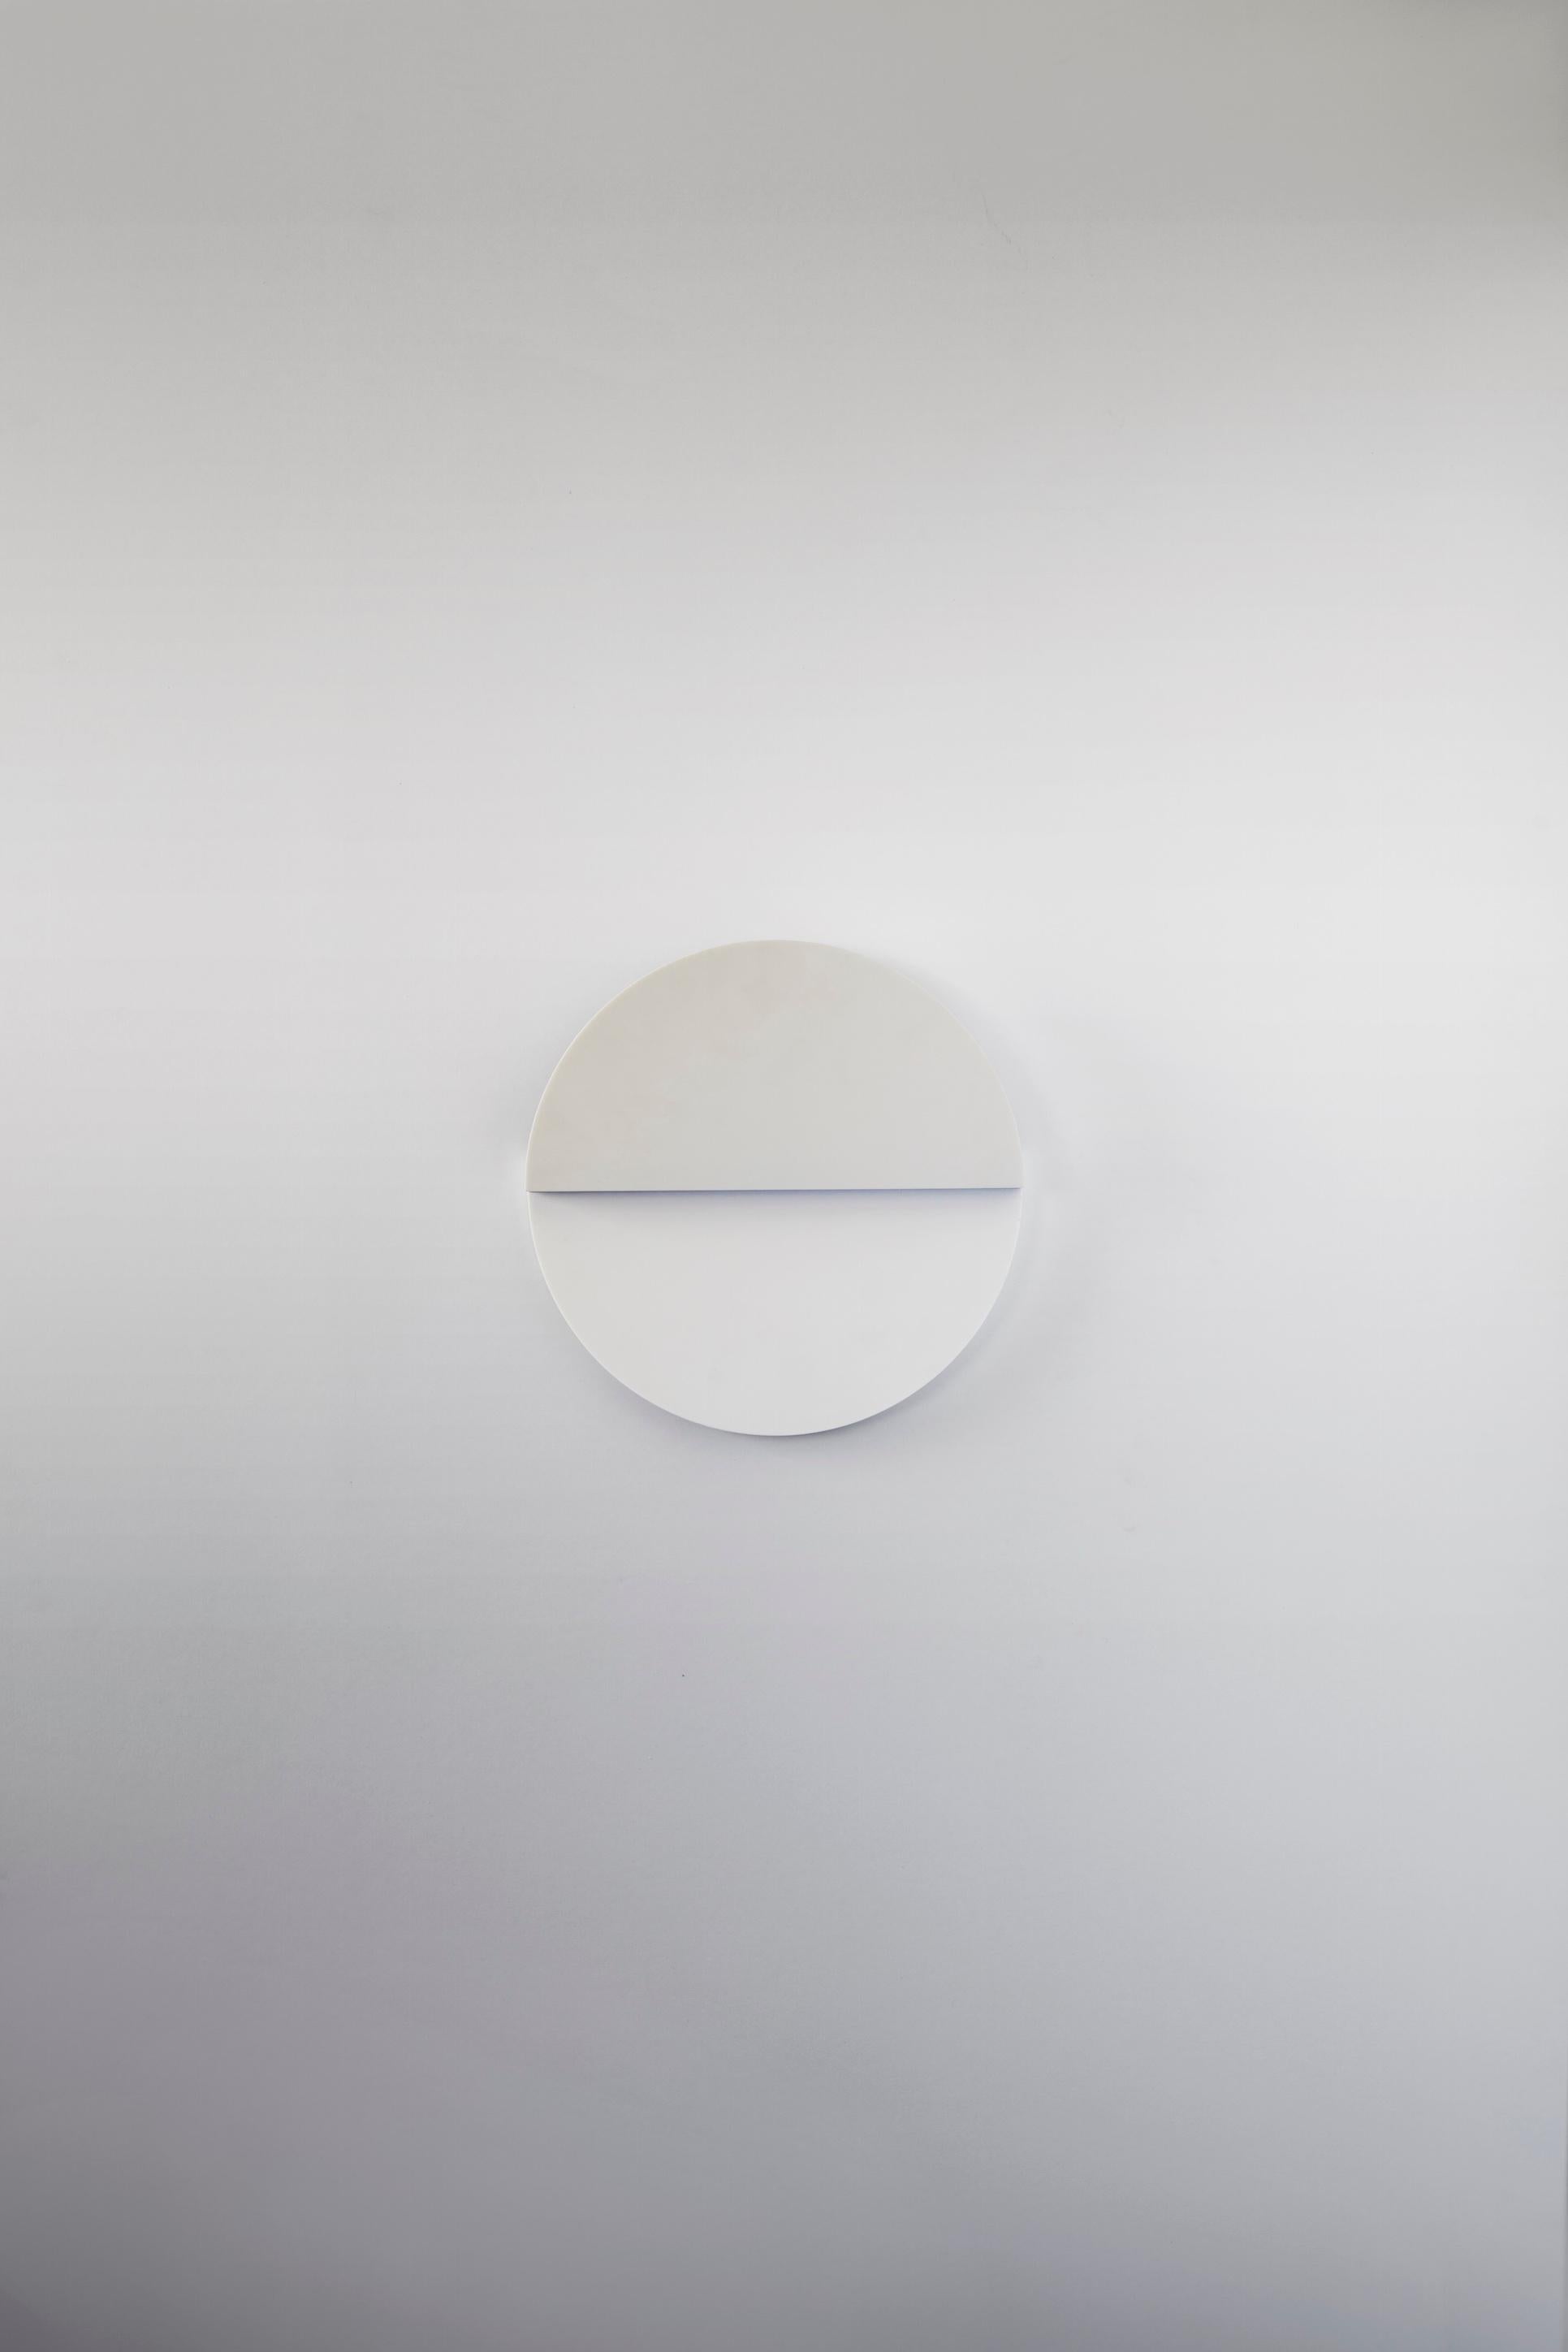 Teil der Cyclades Series, die die Kraft der Architektur im kleinen Maßstab erforscht. Die Circle-Leuchte beleuchtet die Reinheit, die Symbolik und die intime Kraft des Kreises: eine der emblematischsten und elementarsten geometrischen Formen, die